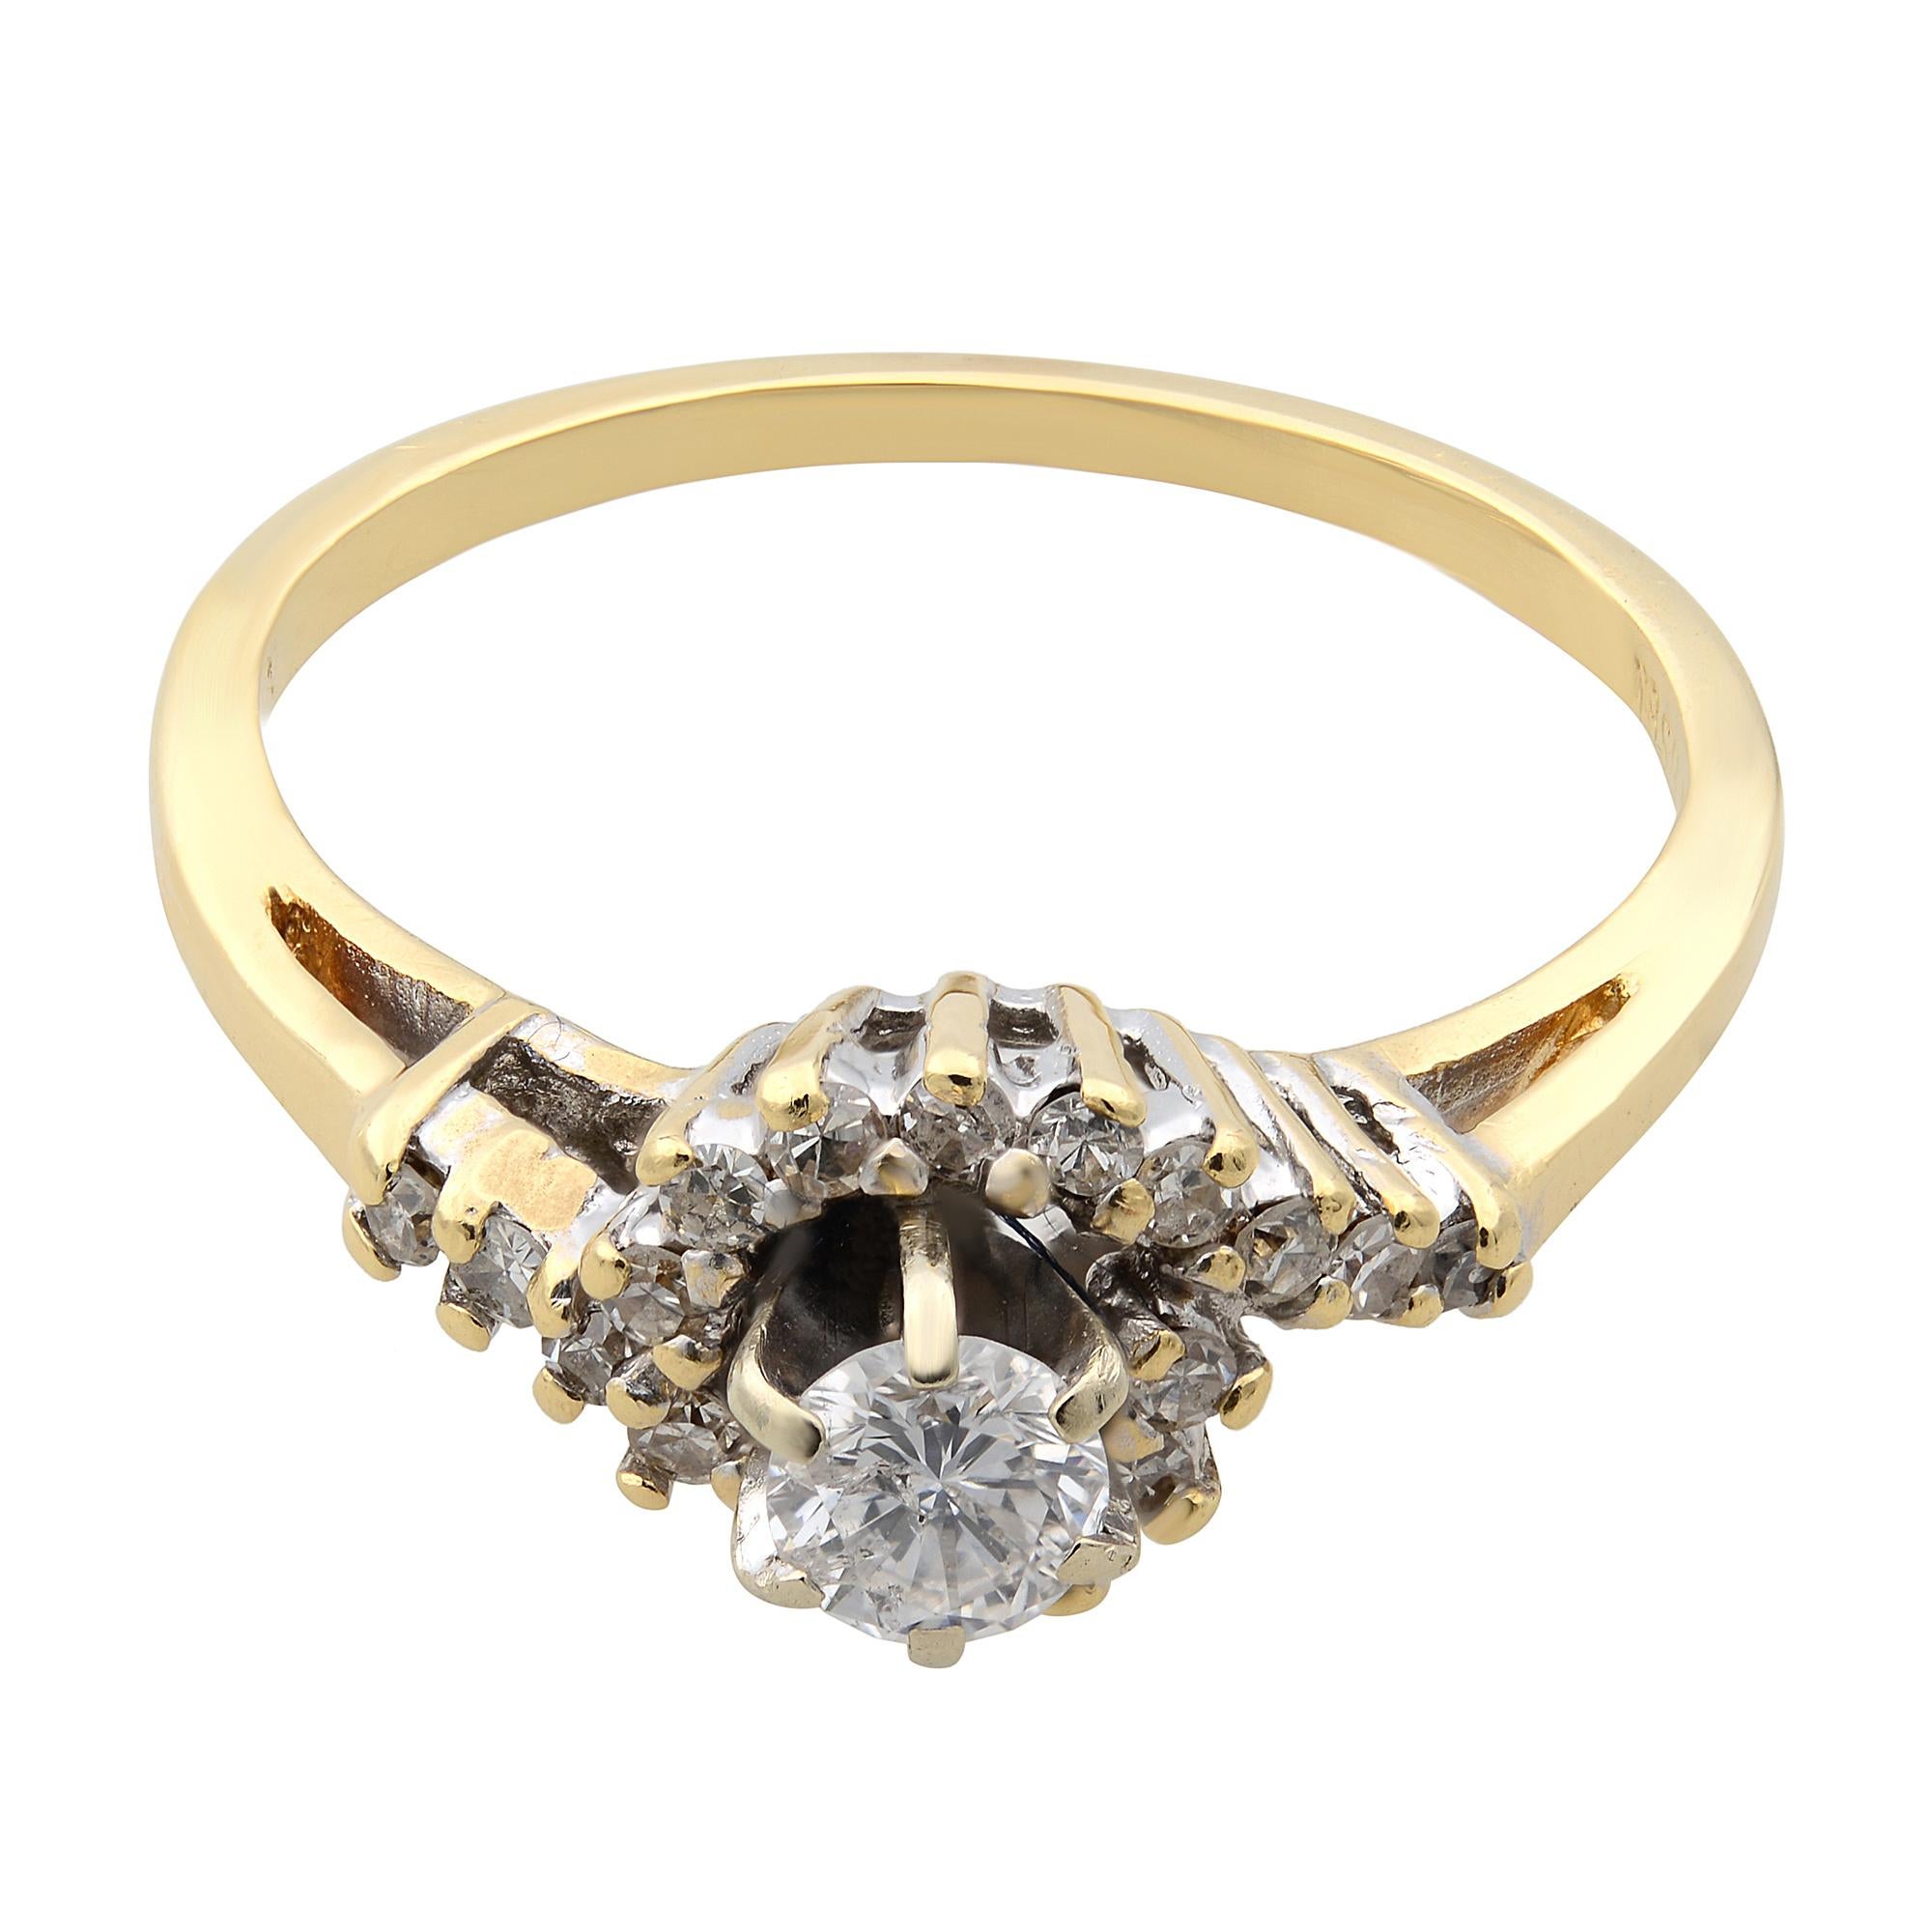 Ein klassischer und eleganter Ring ist ein perfektes Geschenk für jede Gelegenheit, das sicher einen unvergesslichen Eindruck hinterlässt. Dieser schöne Ring ist aus 14k Gelbgold mit 0,33cttw Diamanten gefertigt. Wird mit unserer eleganten